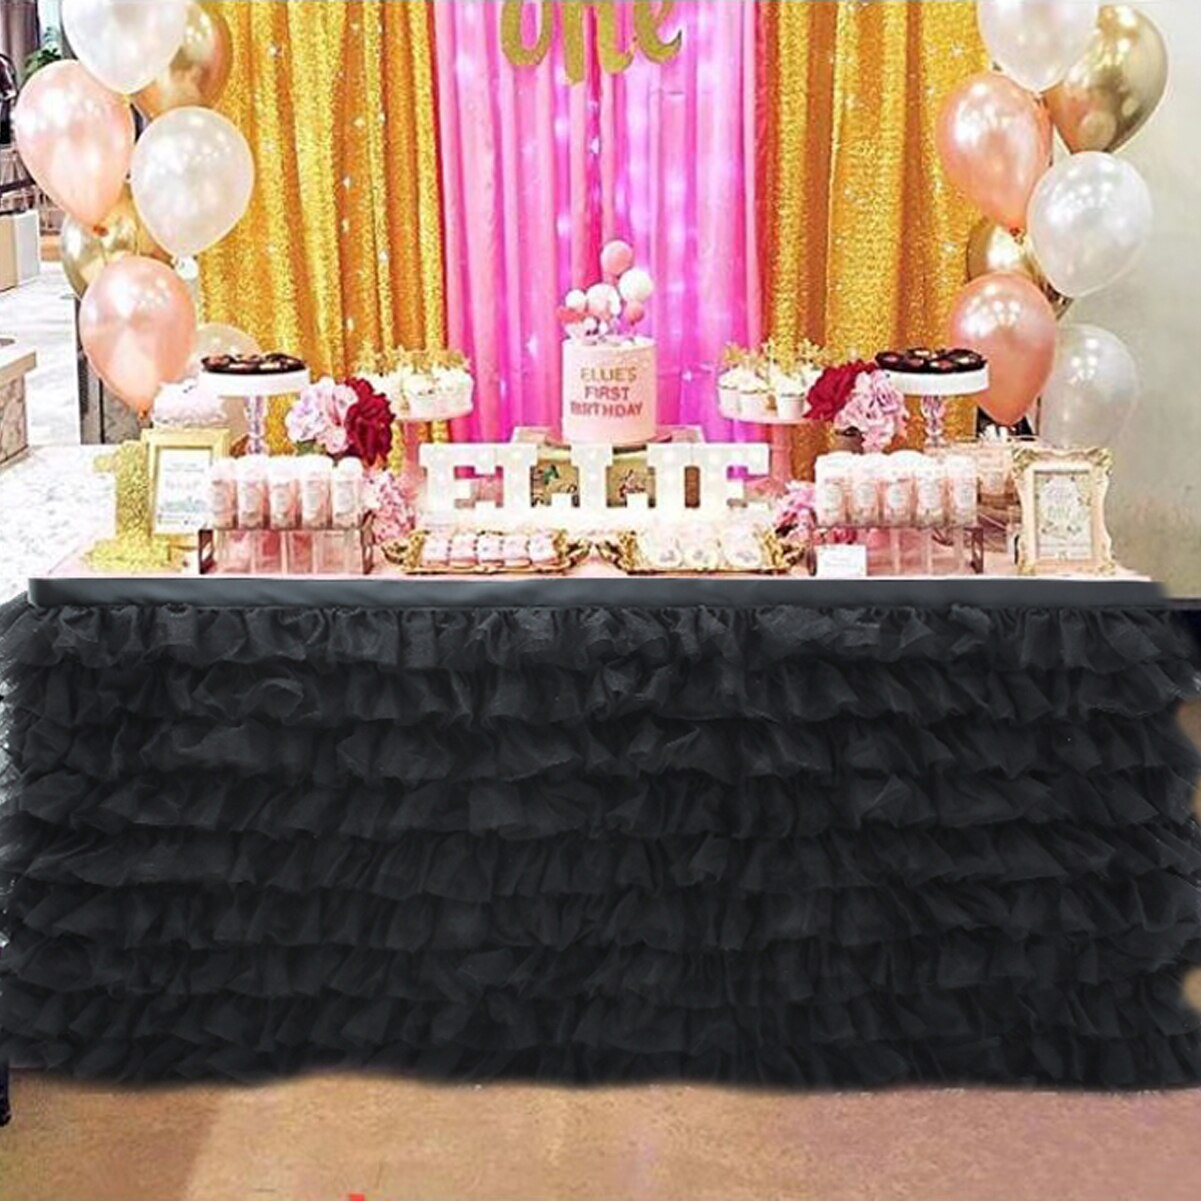 Bord nederdel tyl bord nederdel til bryllup dekoration baby shower fødselsdag fest fest bryllup bord fodpaneler 180 x 77cm: Sort